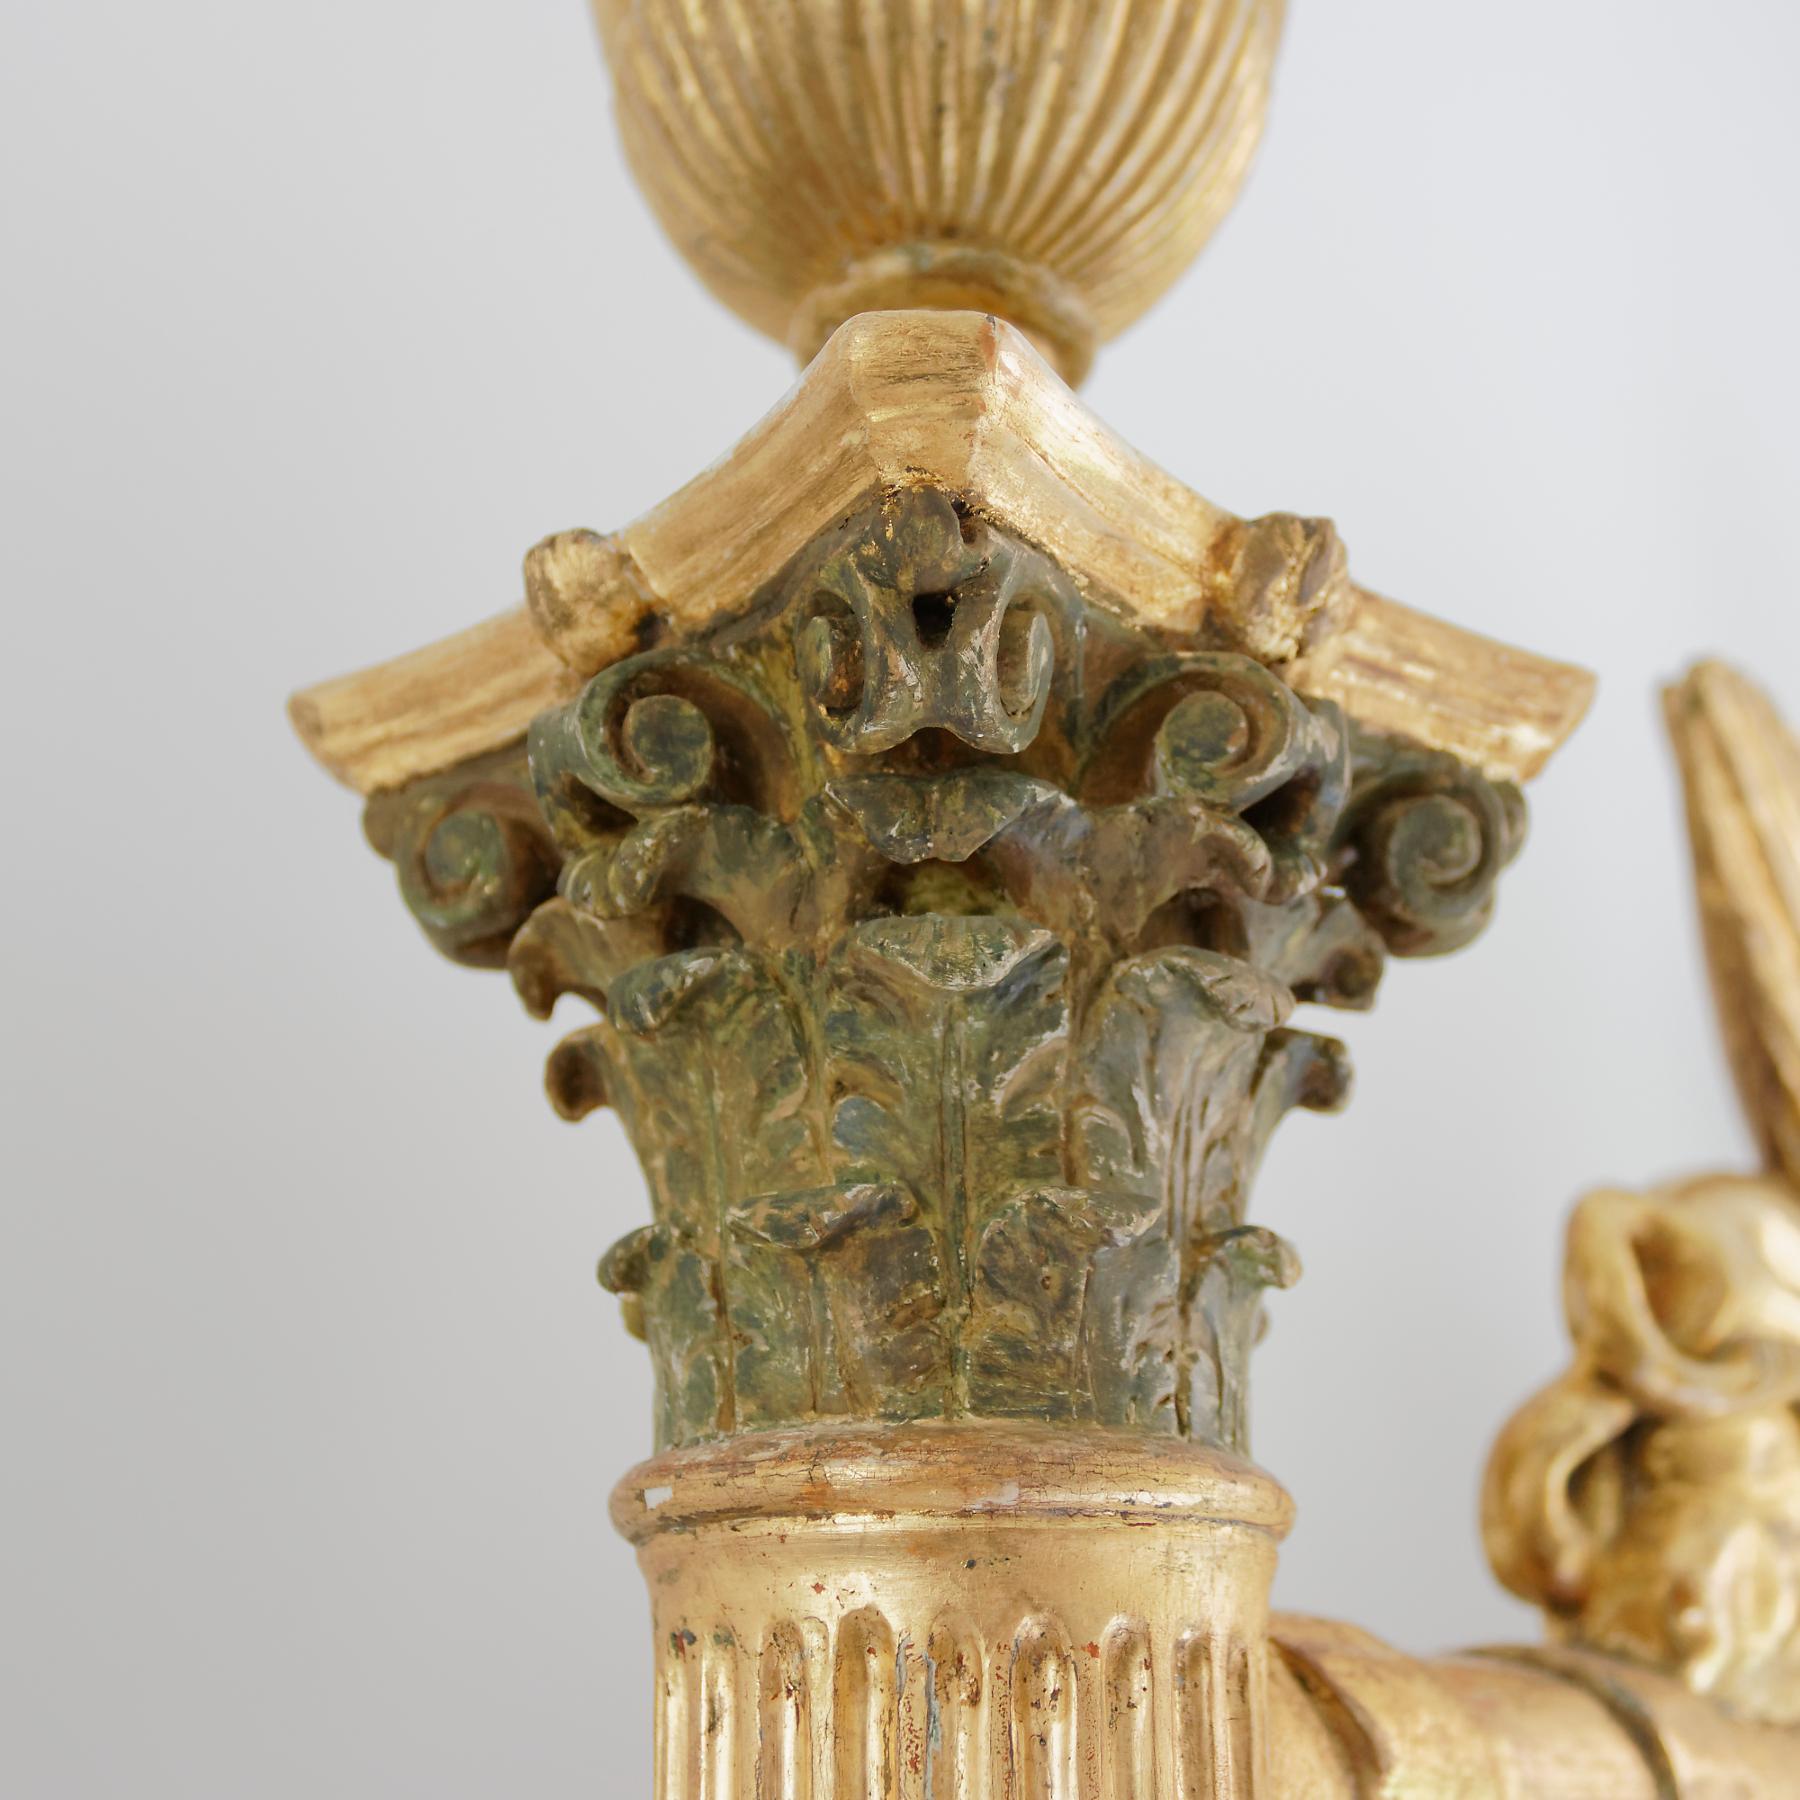 Un inhabituel et intriguant miroir de cheval en bois doré de l'Empire balte dans le goût égyptien. Le design et la riche ornementation de ce miroir reflètent la fascination pour l'antiquité égyptienne suscitée par les campagnes napoléoniennes de la